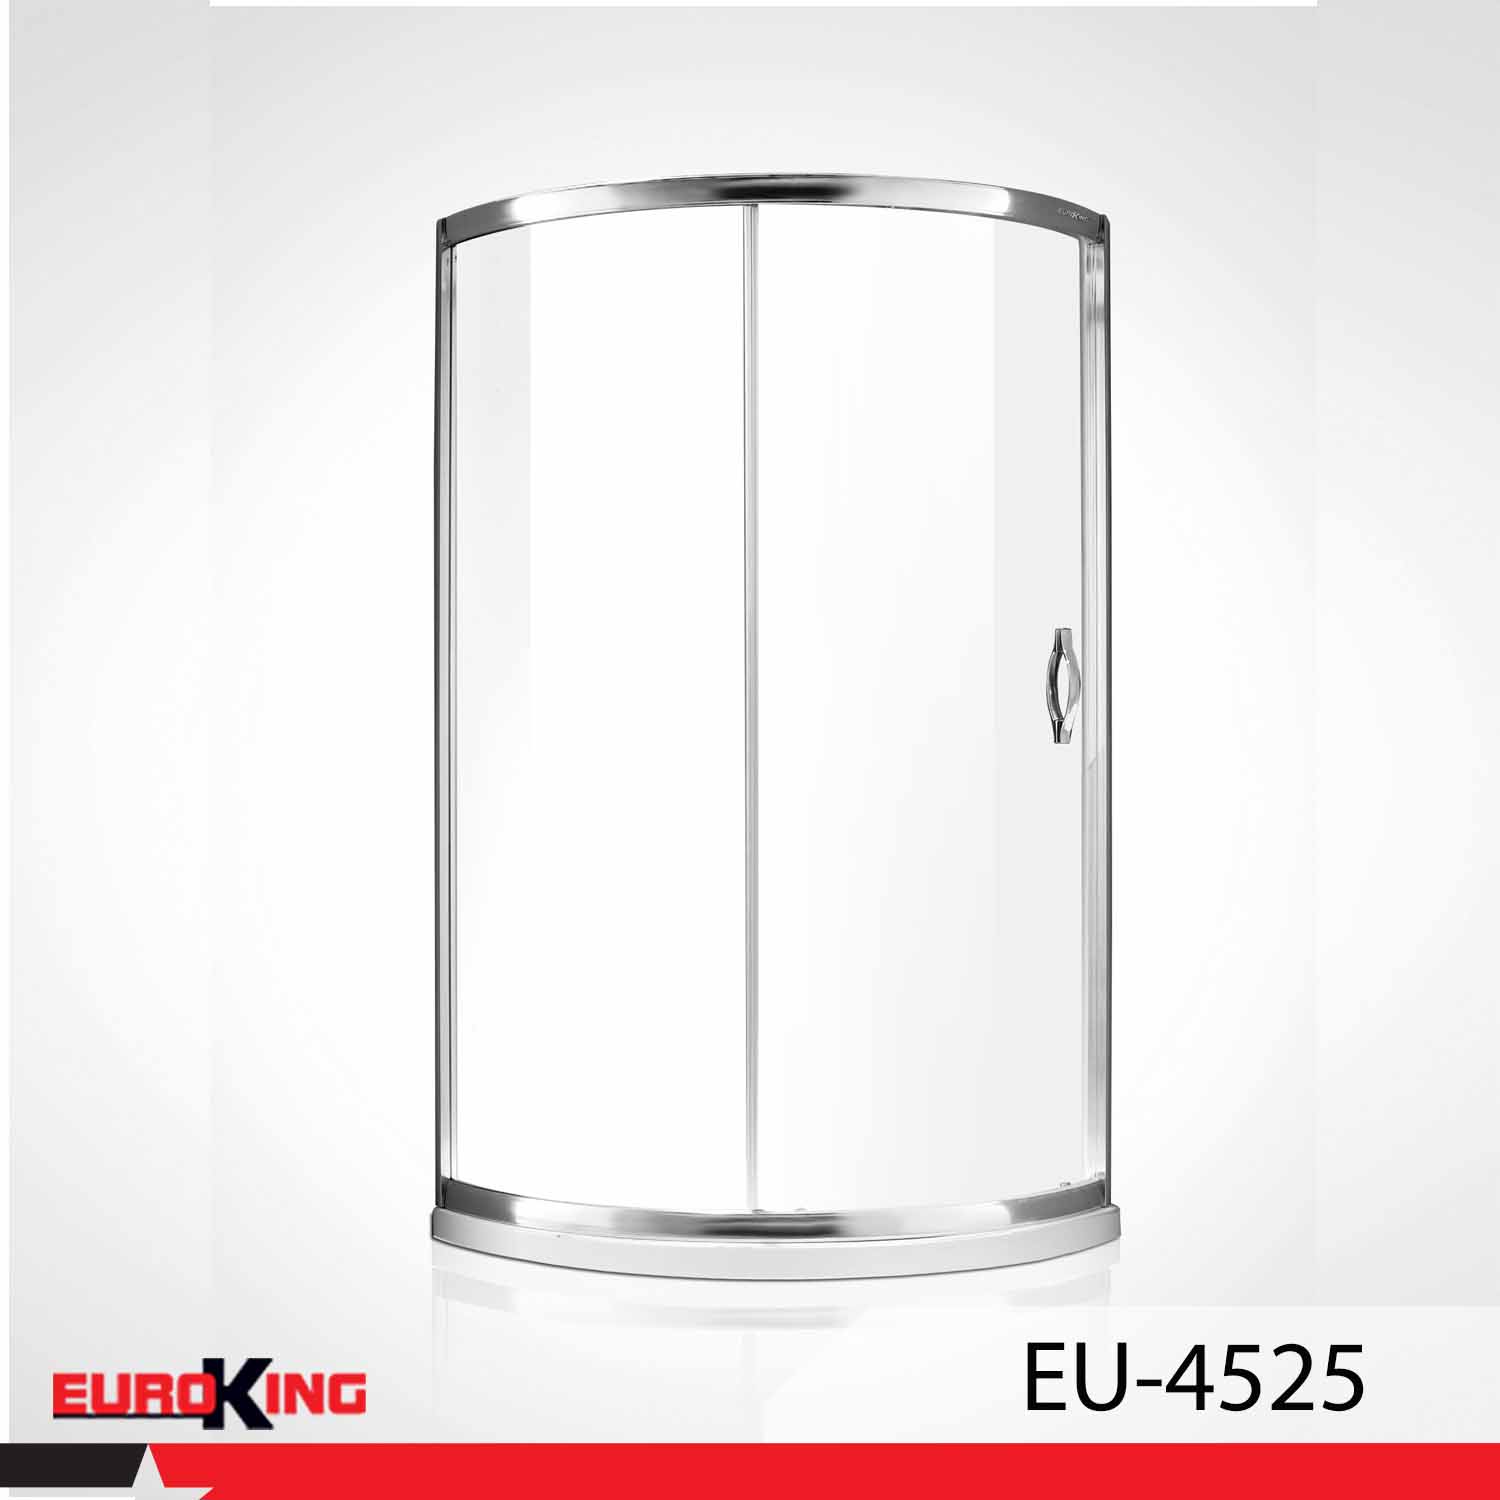  Phòng tắm vách kính EuroKing EU – 4525